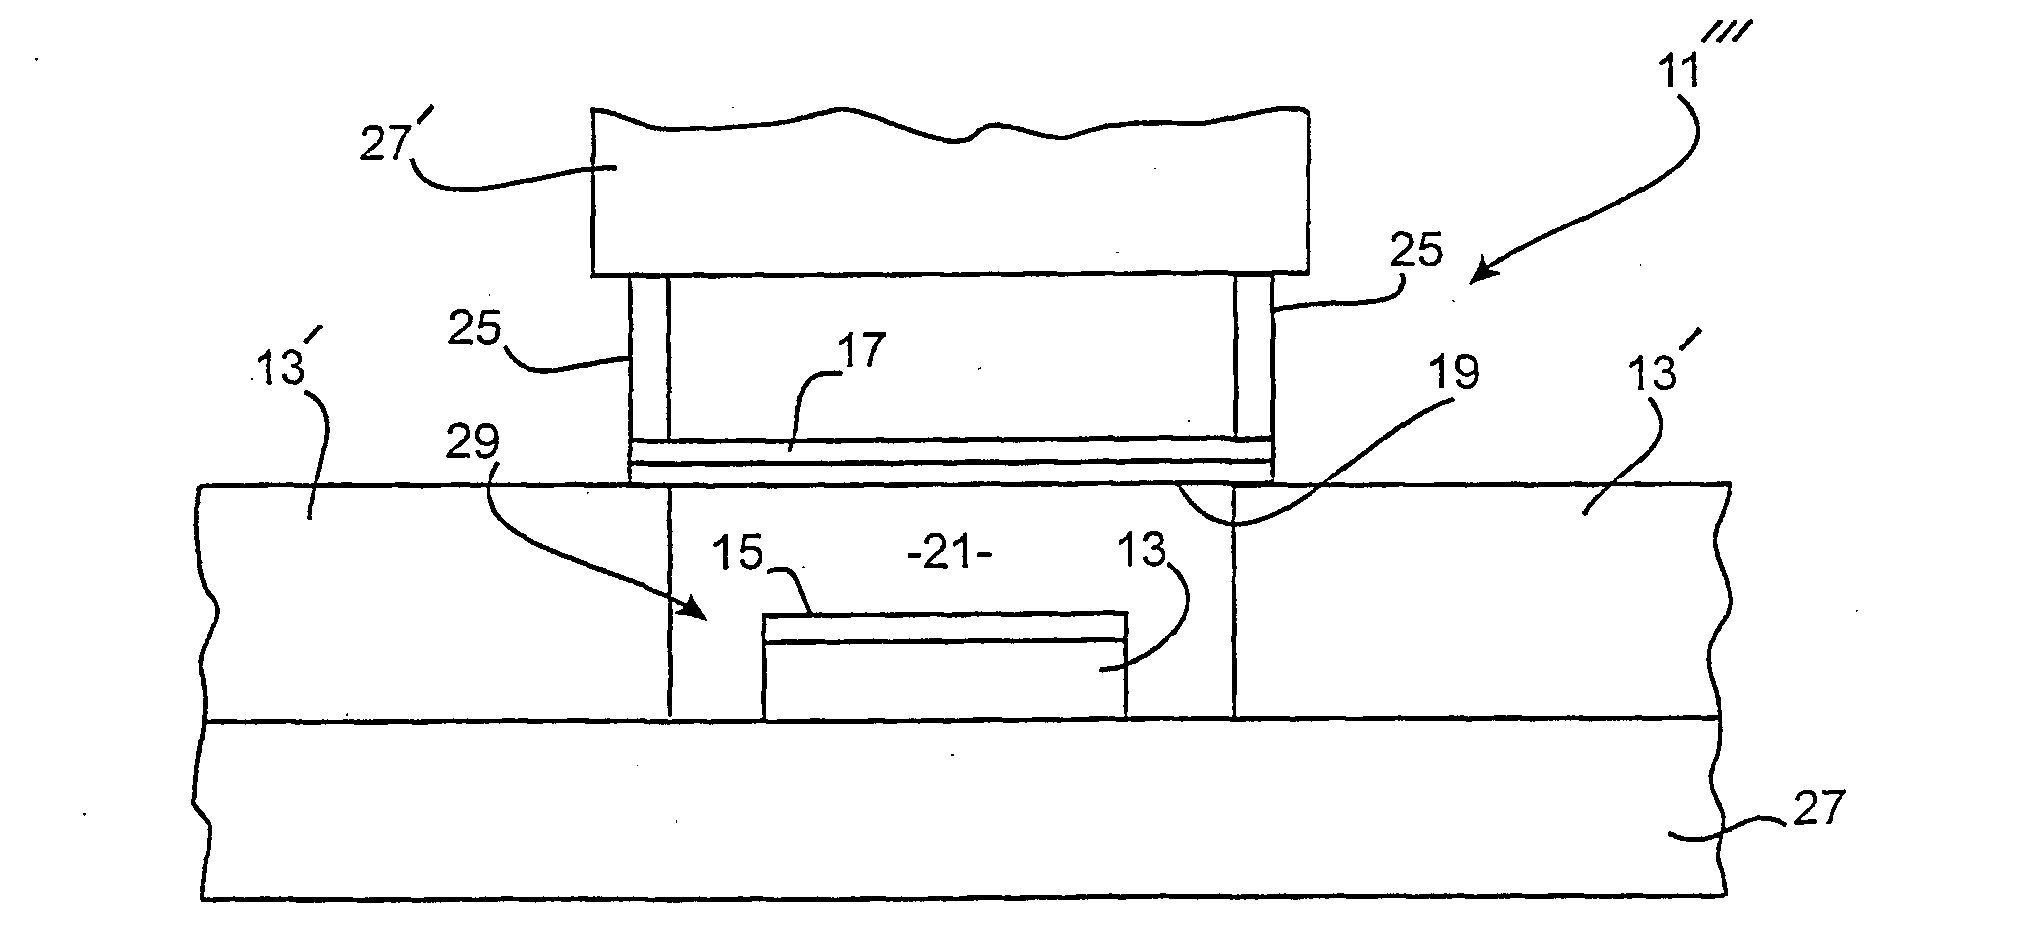 Tunable cavity resonator and method for fabricating same